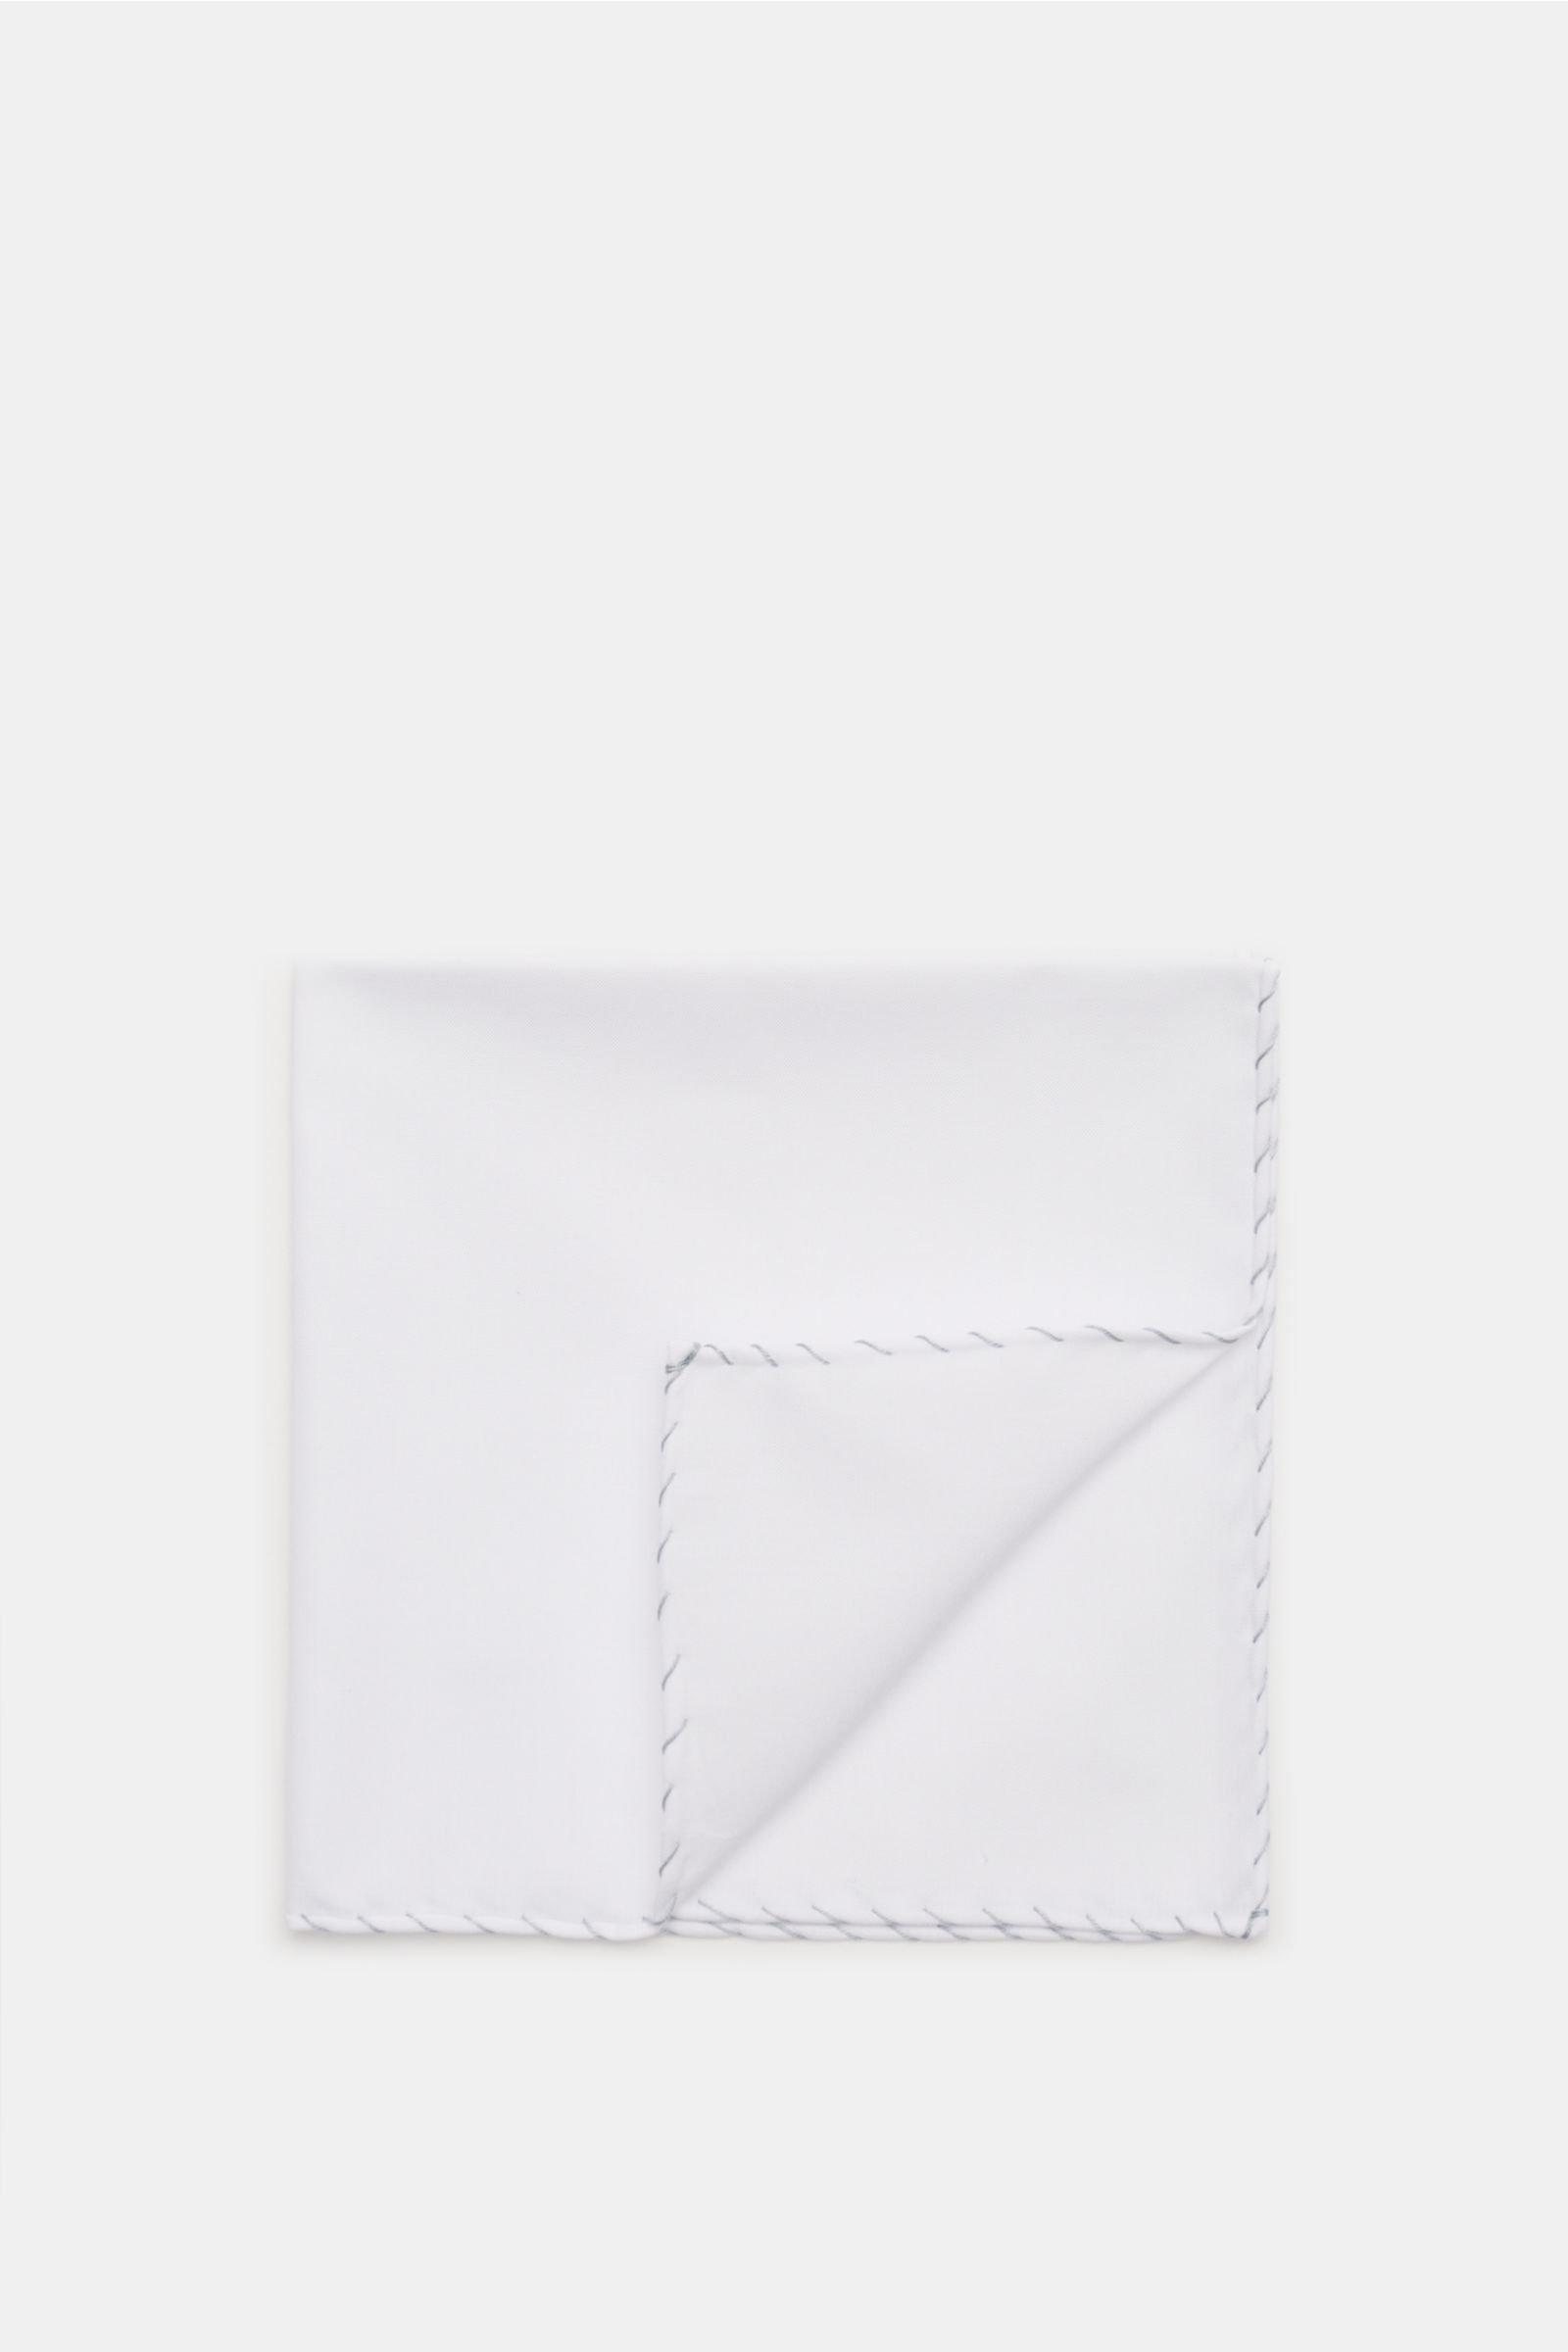 Pocket square light grey/white